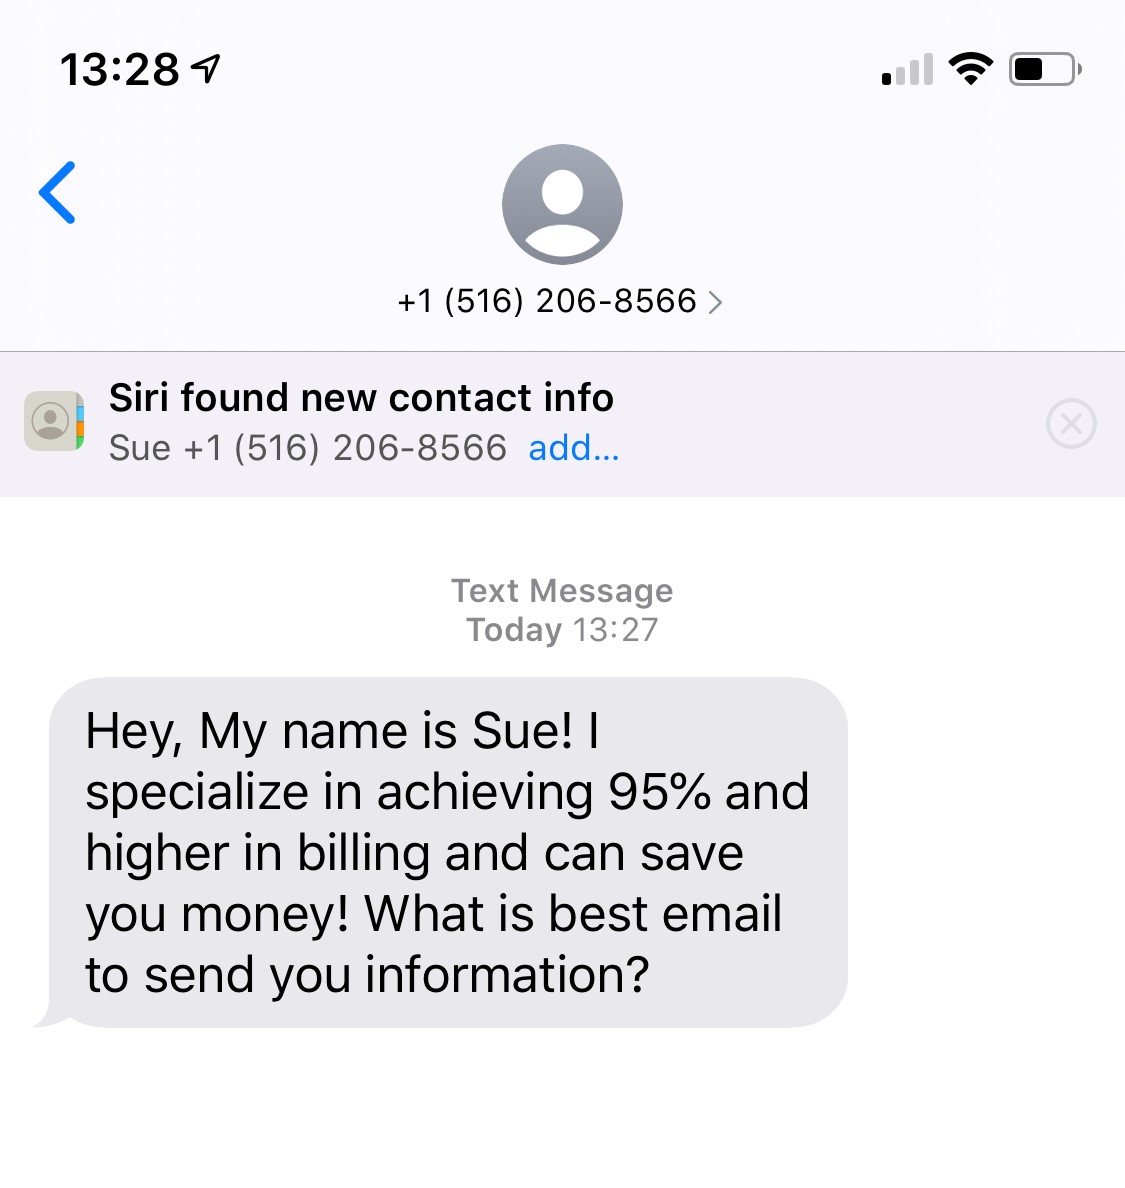 Beispiel für SMS-Phishing